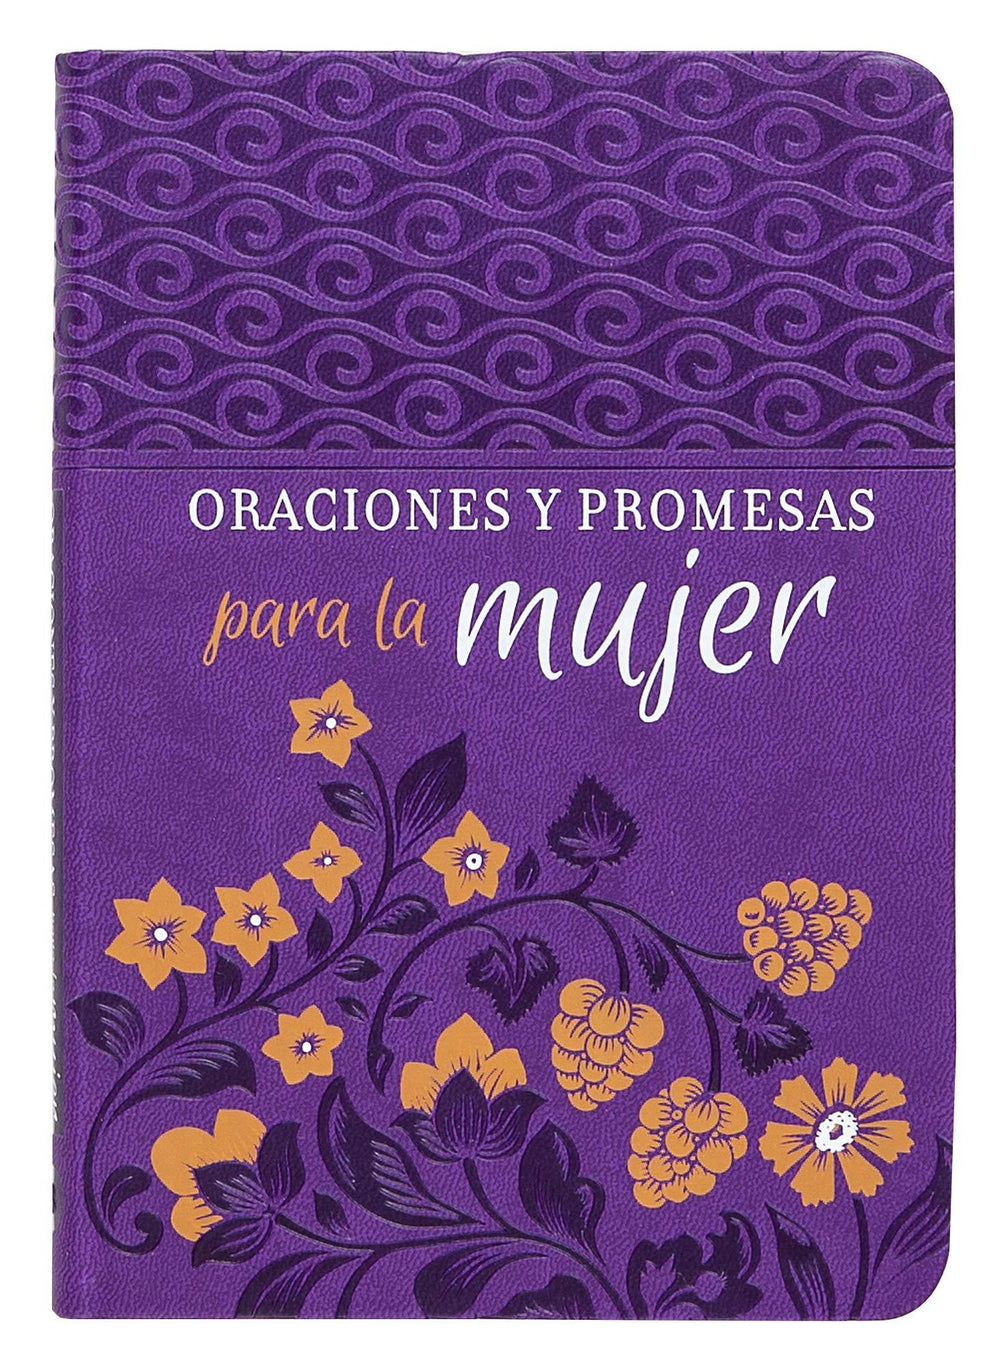 Oraciones Y Promesas - Pura Vida Books